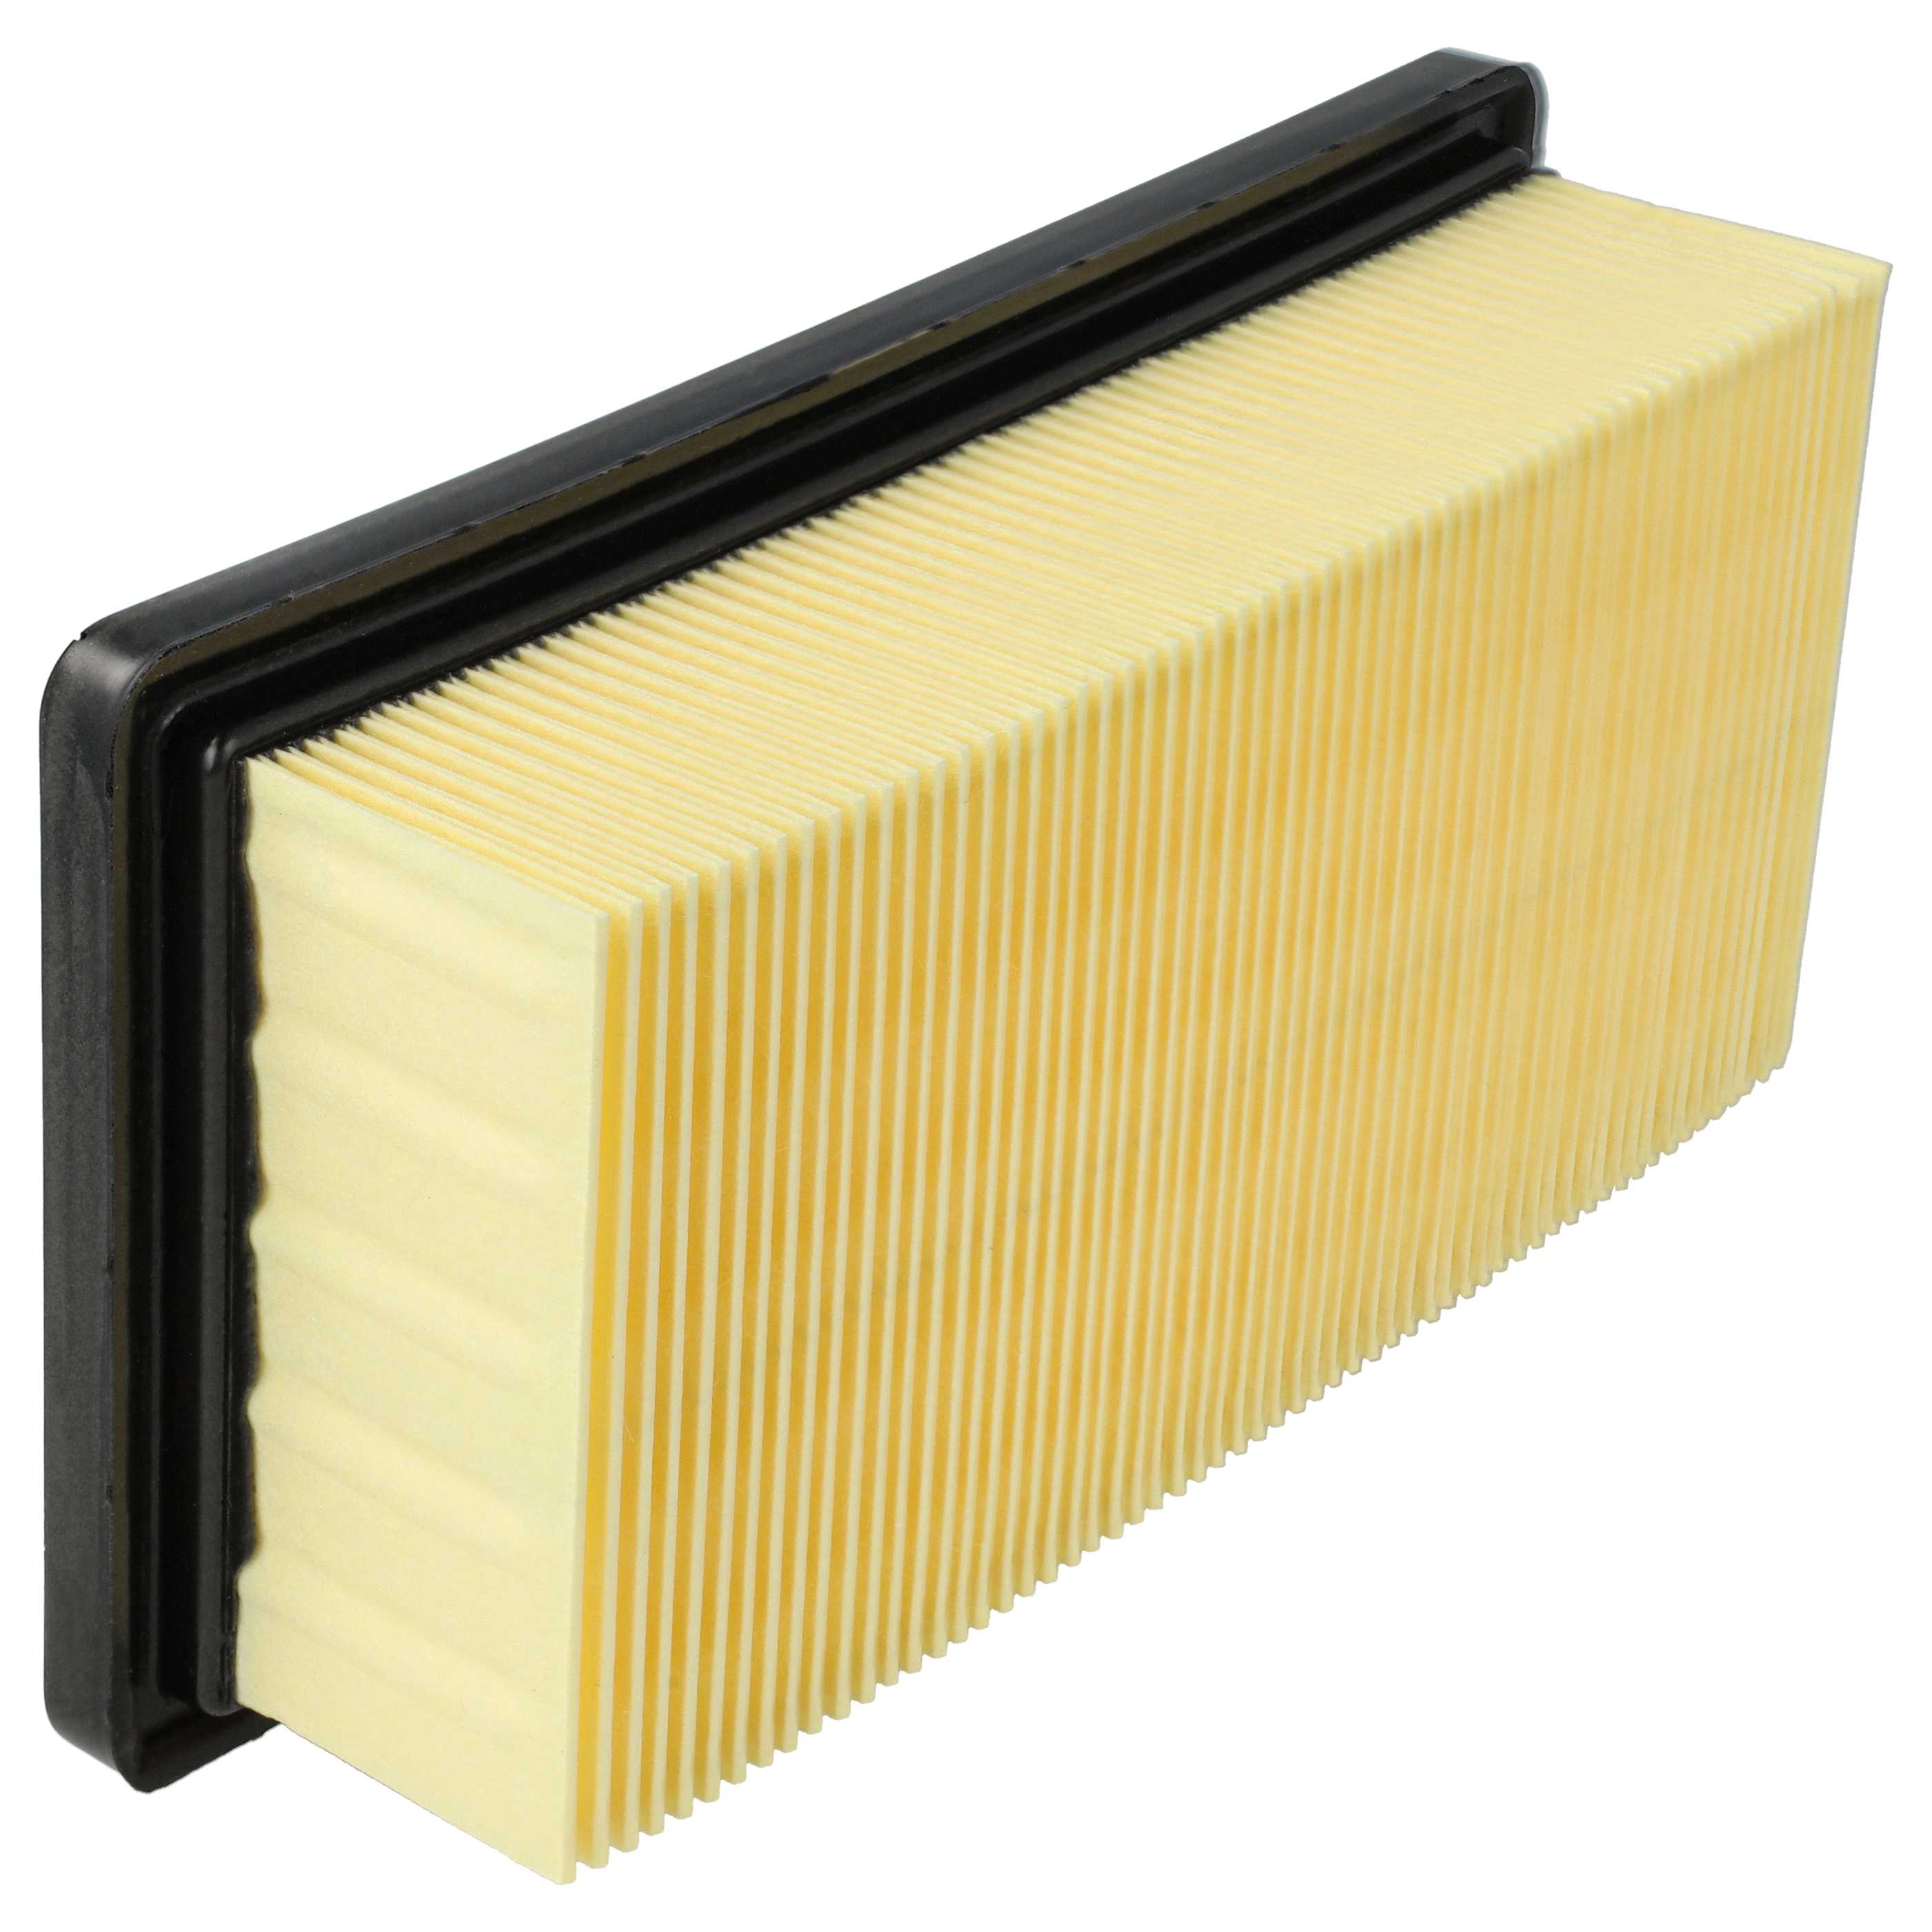 2x Filtre remplace Kärcher 6.414-971.0 pour aspirateur - filtre à plis plats